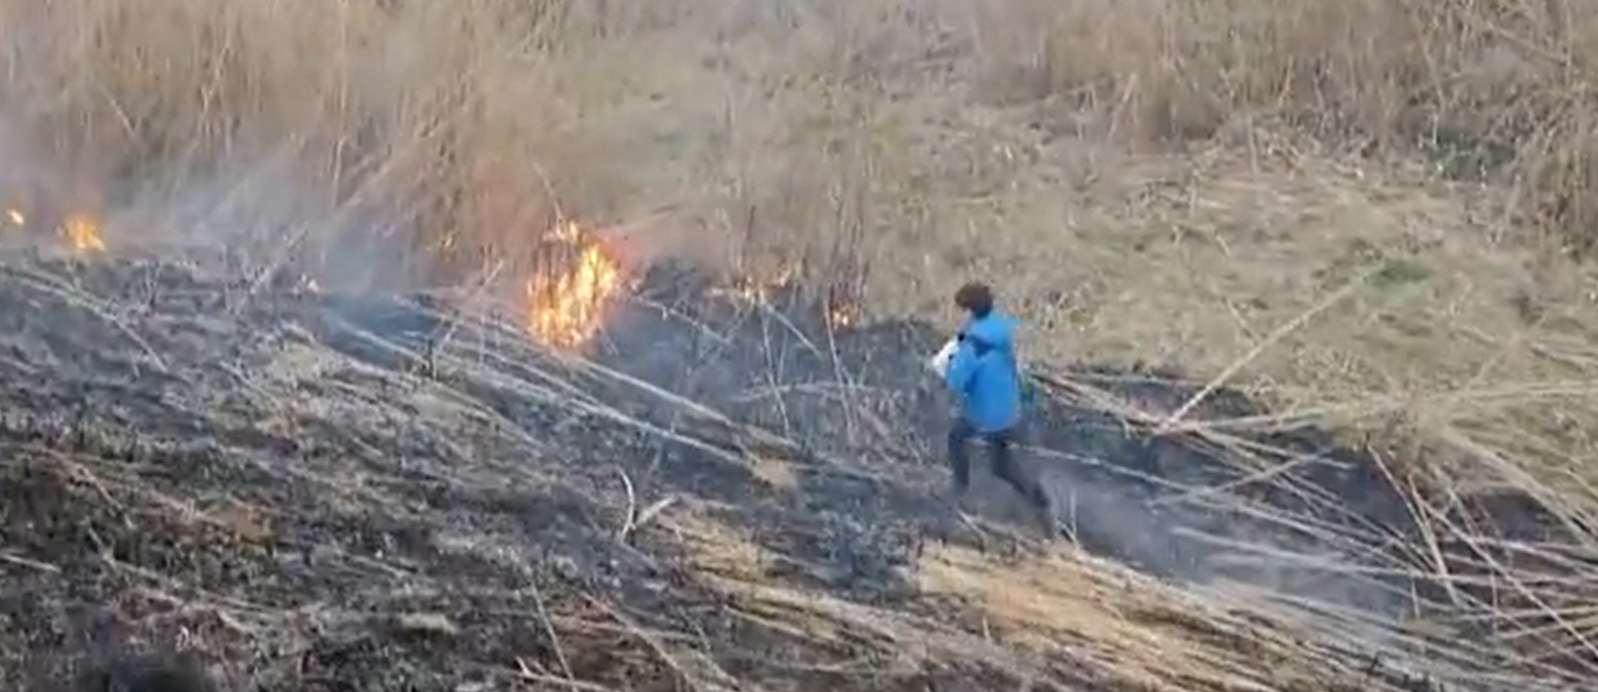 12 годишно момче от Бургас спря разразил се пожар край езеро